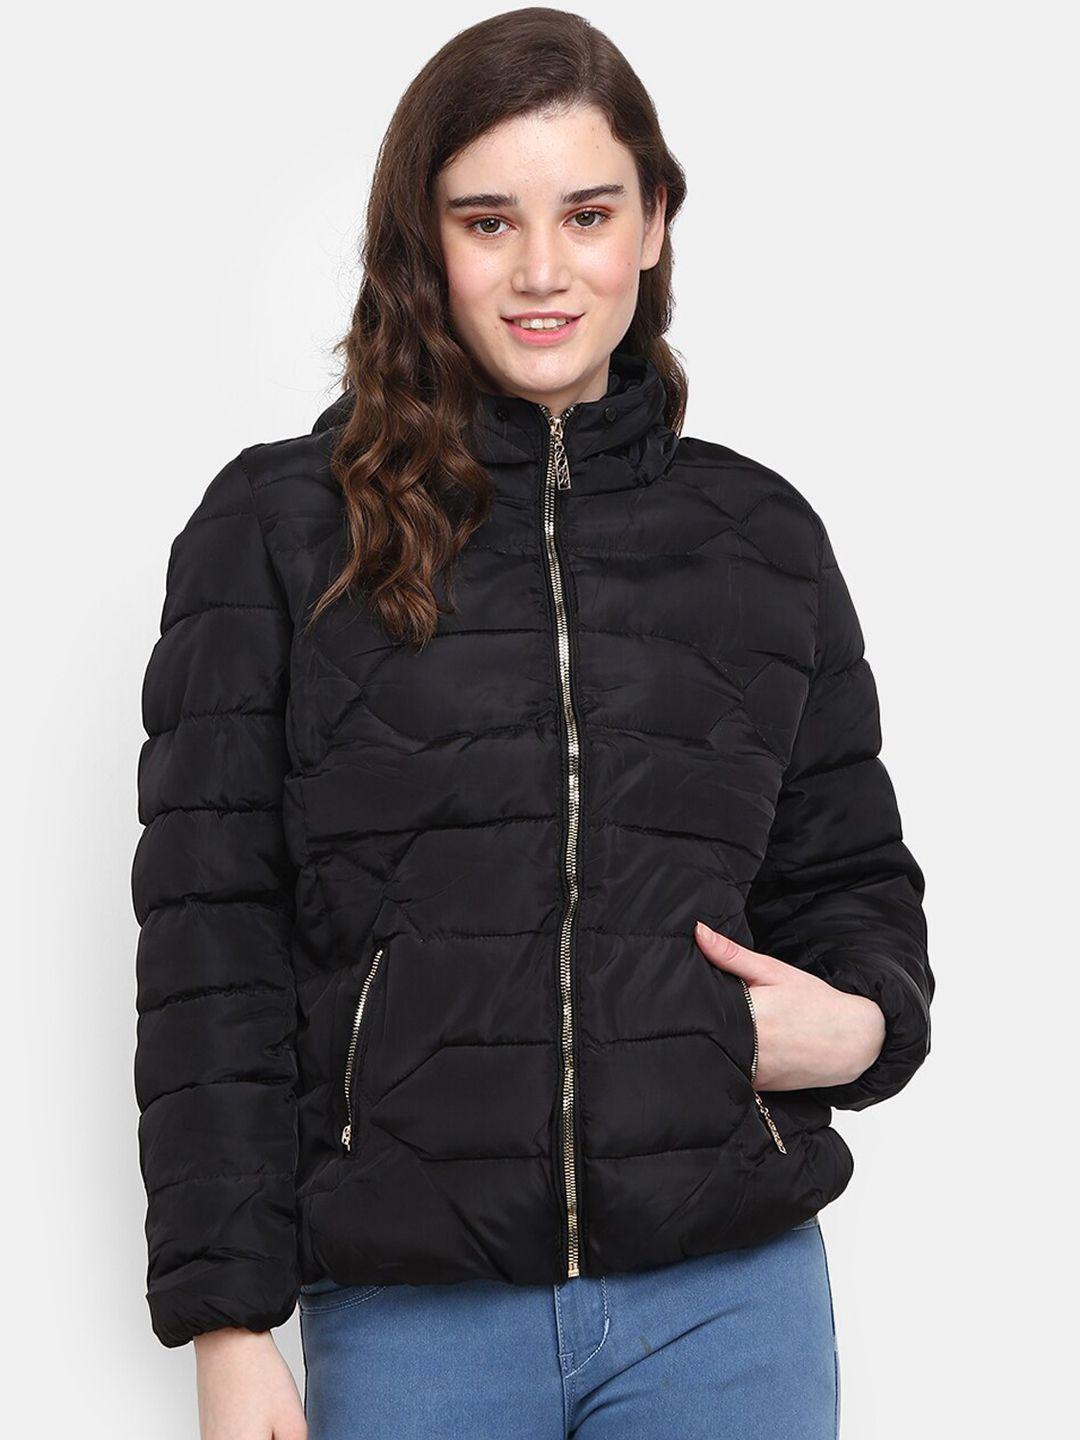 v-mart women black lightweight cotton puffer jacket